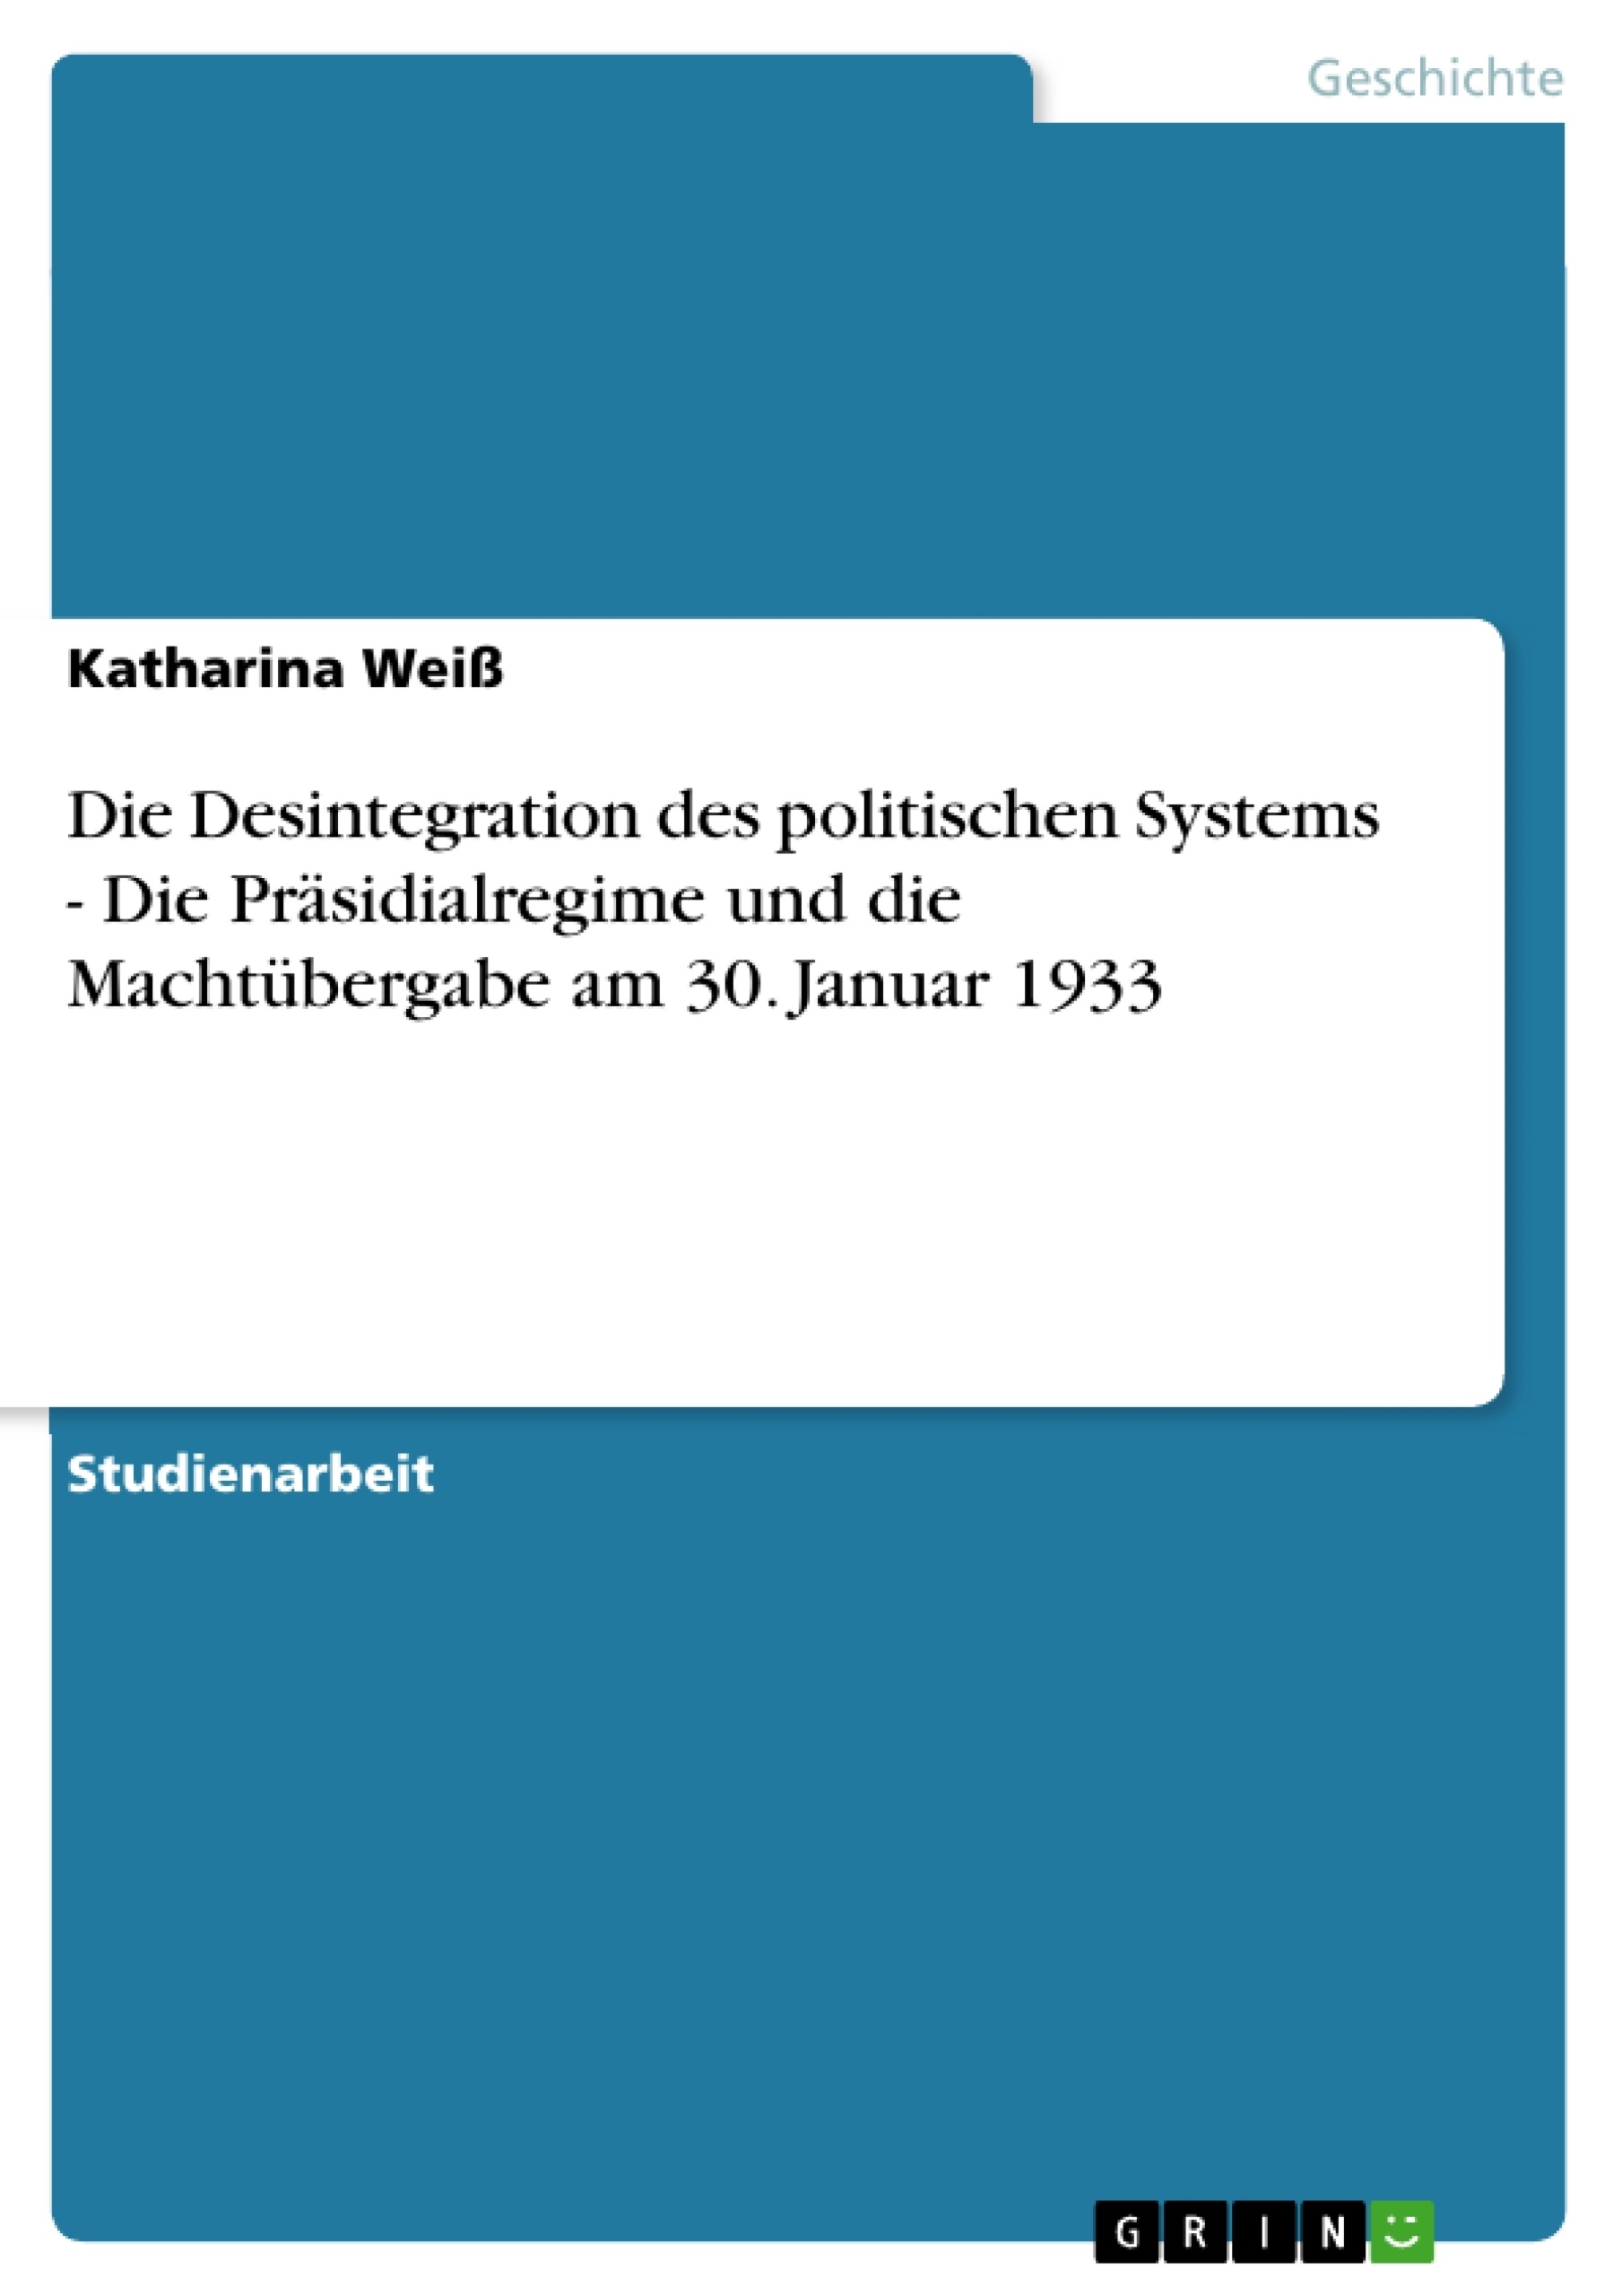 Título: Die Desintegration des politischen Systems - Die Präsidialregime und die Machtübergabe am 30. Januar 1933 